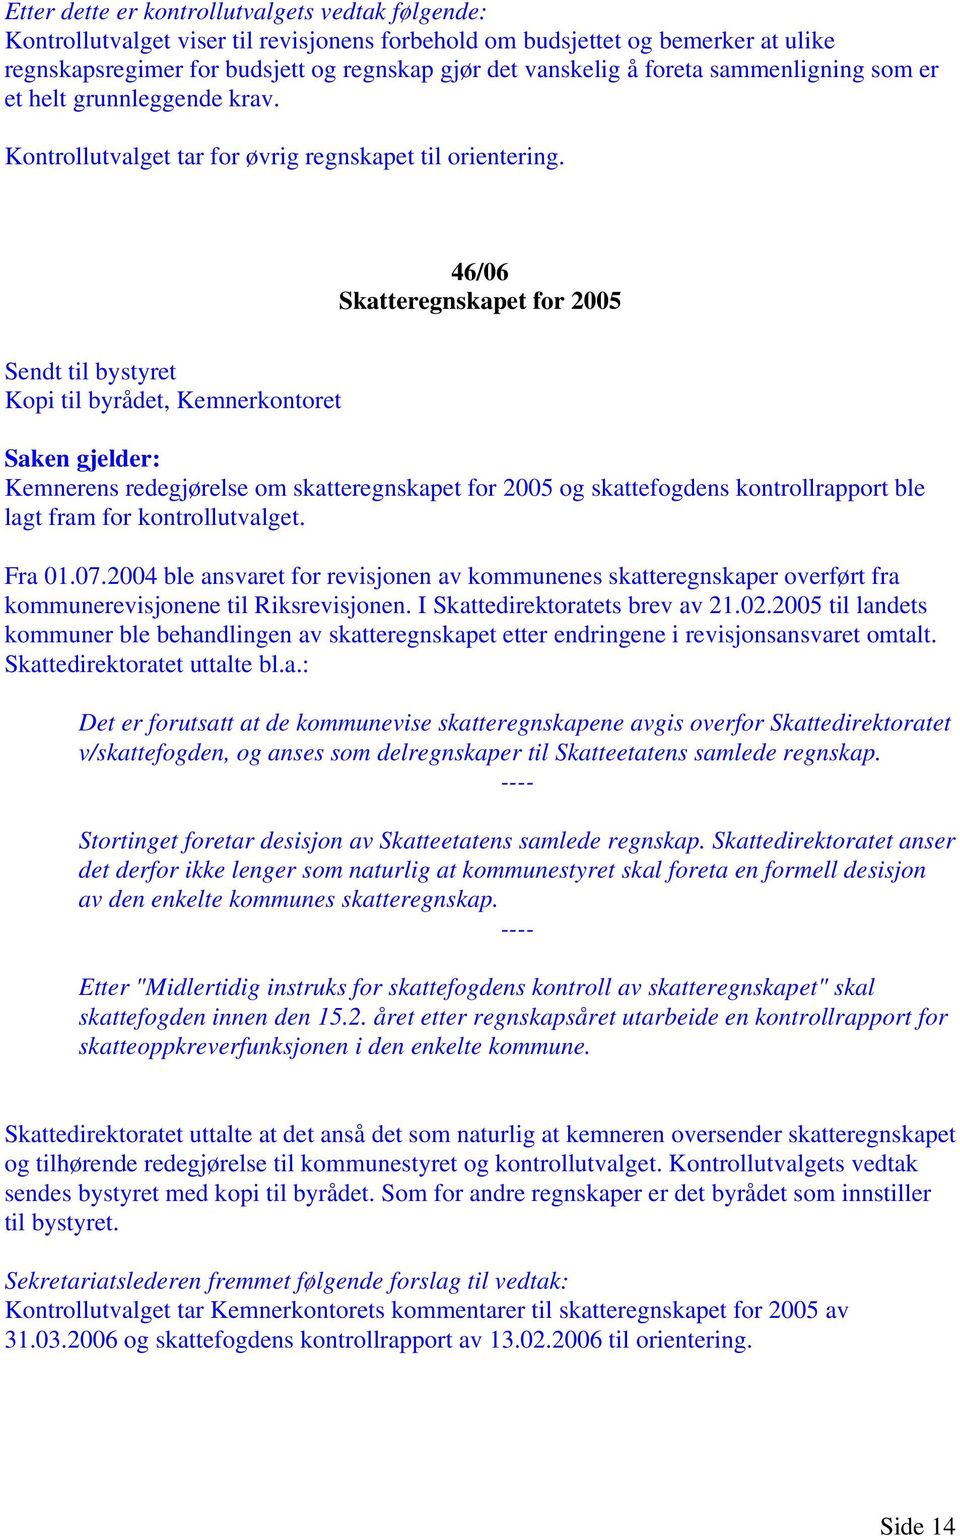 2004 ble ansvaret for revisjonen av kommunenes skatteregnskaper overført fra kommunerevisjonene til Riksrevisjonen. I Skattedirektoratets brev av 21.02.